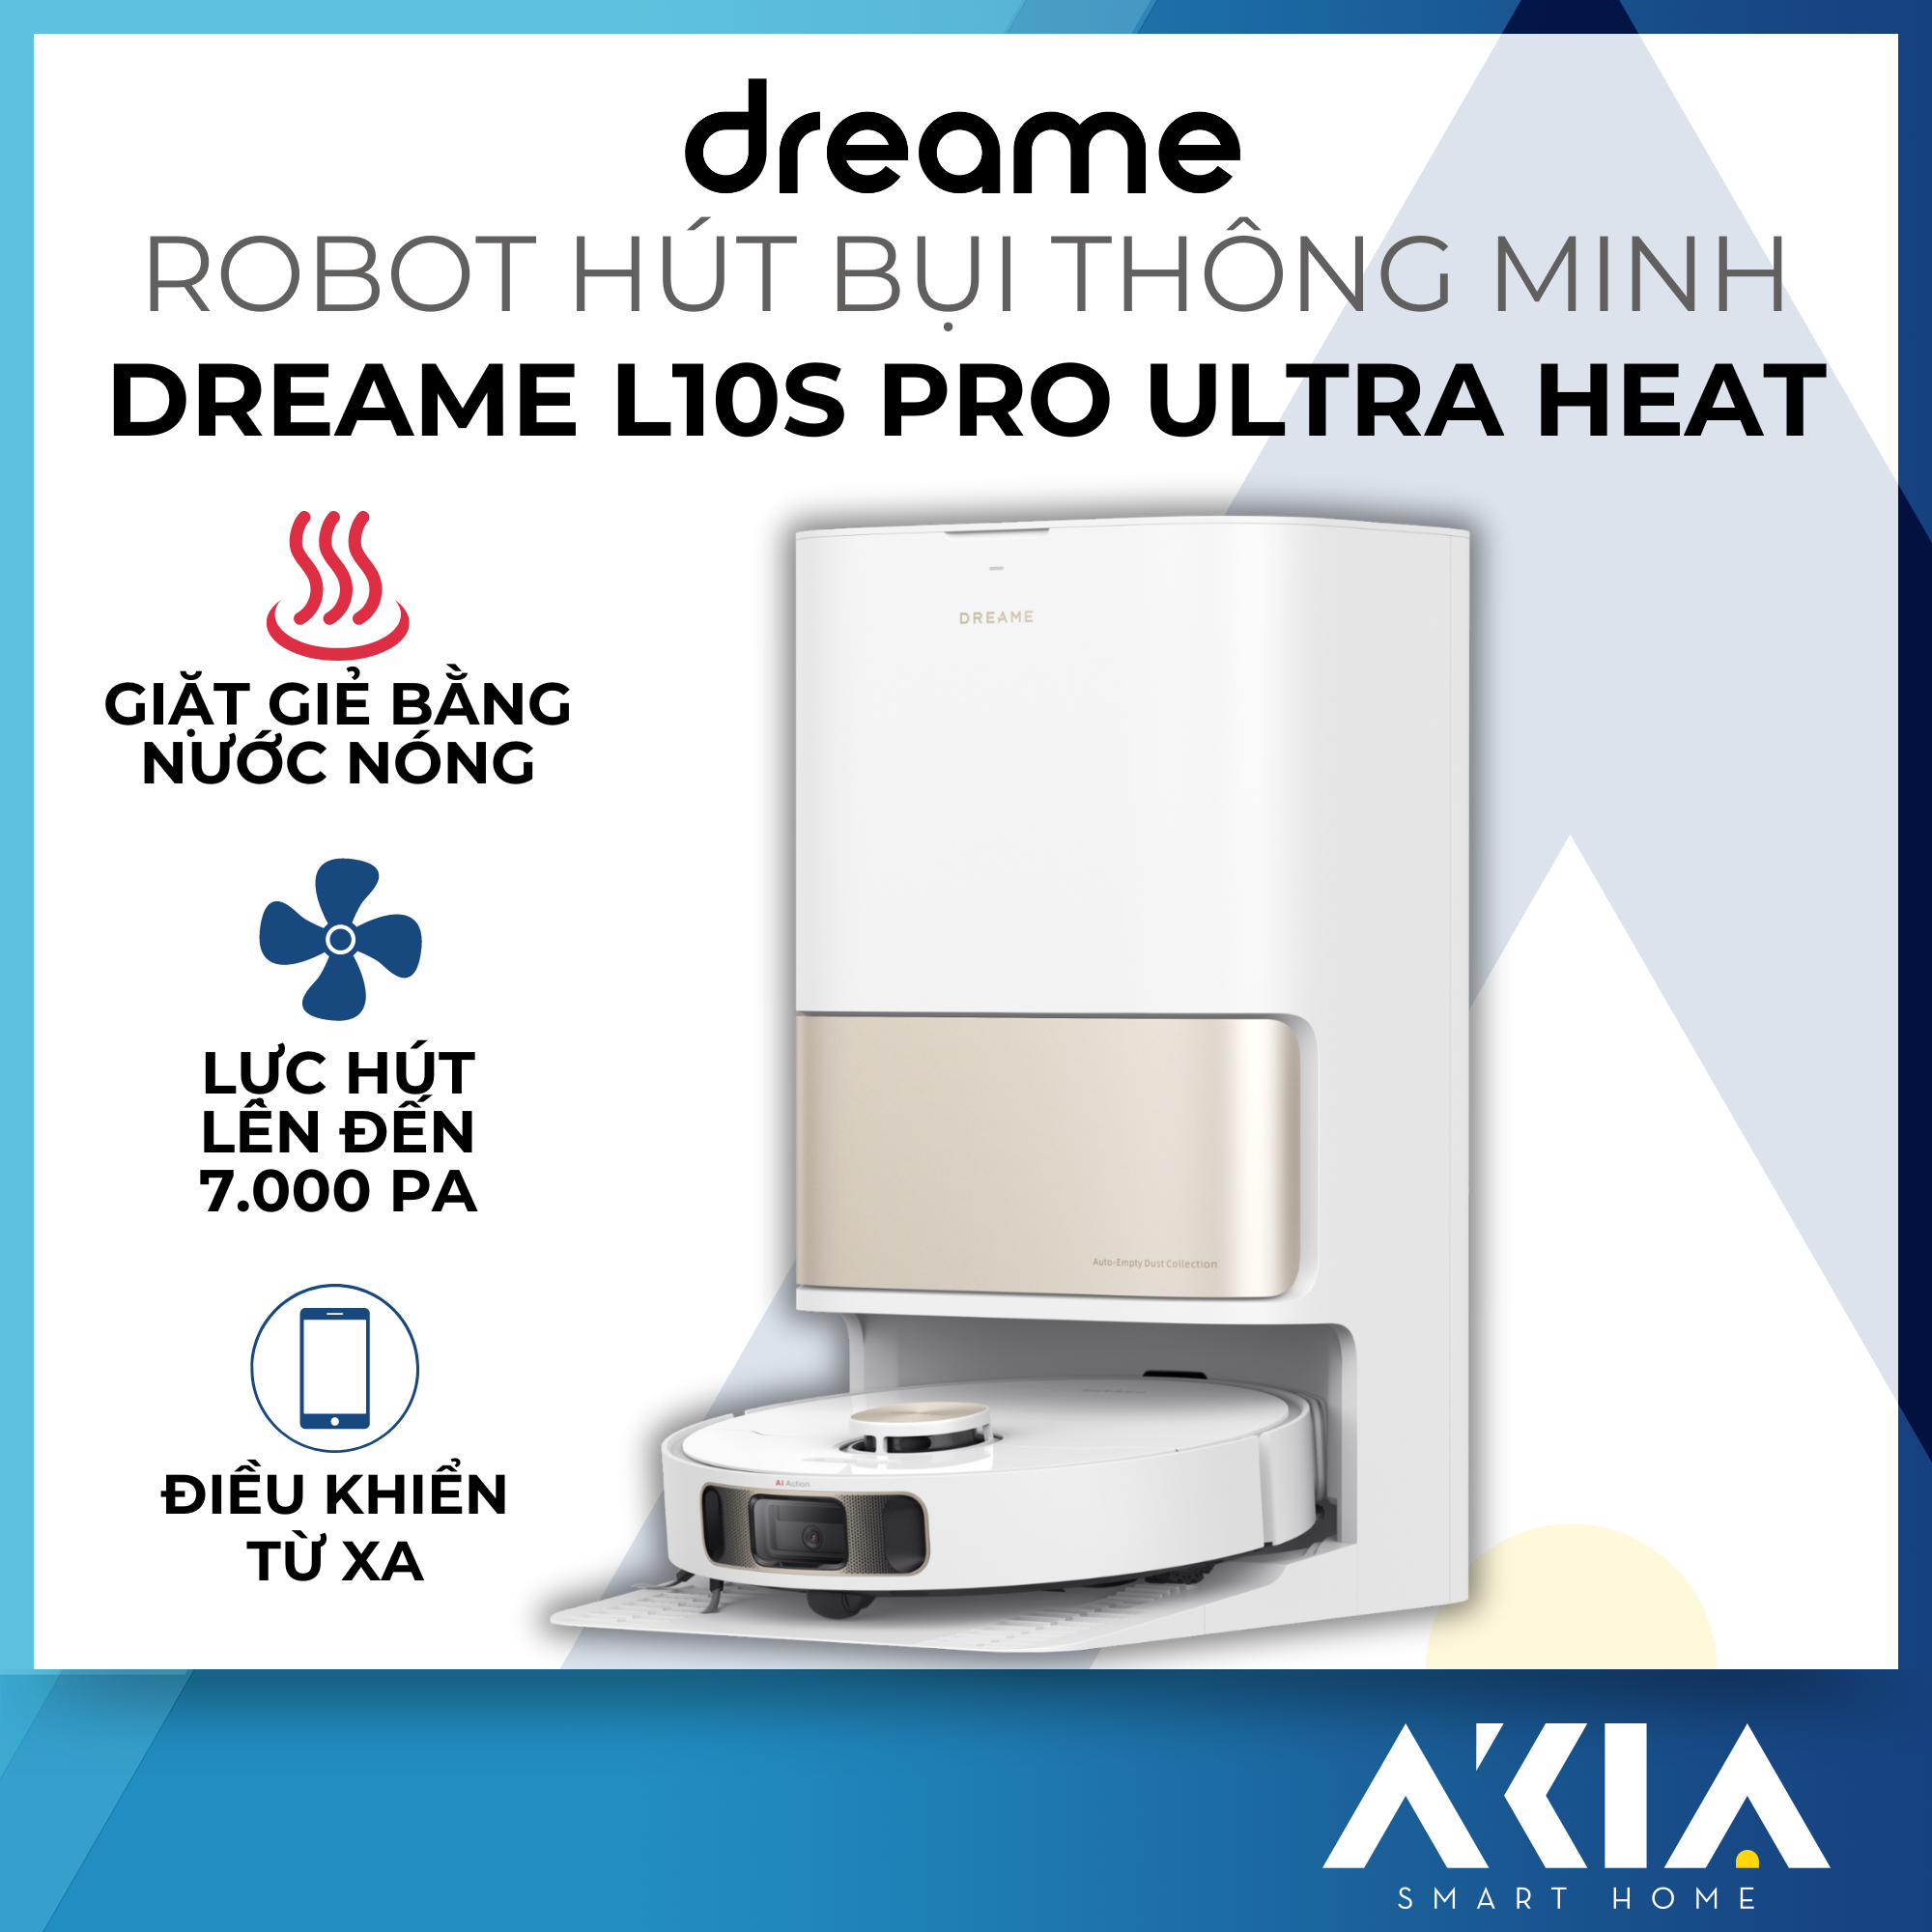 Robot hút bụi lau nhà thông minh Dreame L10s Pro Ultra Heat - Lực hút 7000Pa, Giặt giẻ bằng nước nóng, Điều khiển từ xa - Bản quốc tế, Hàng chính hãng - BH 24 tháng